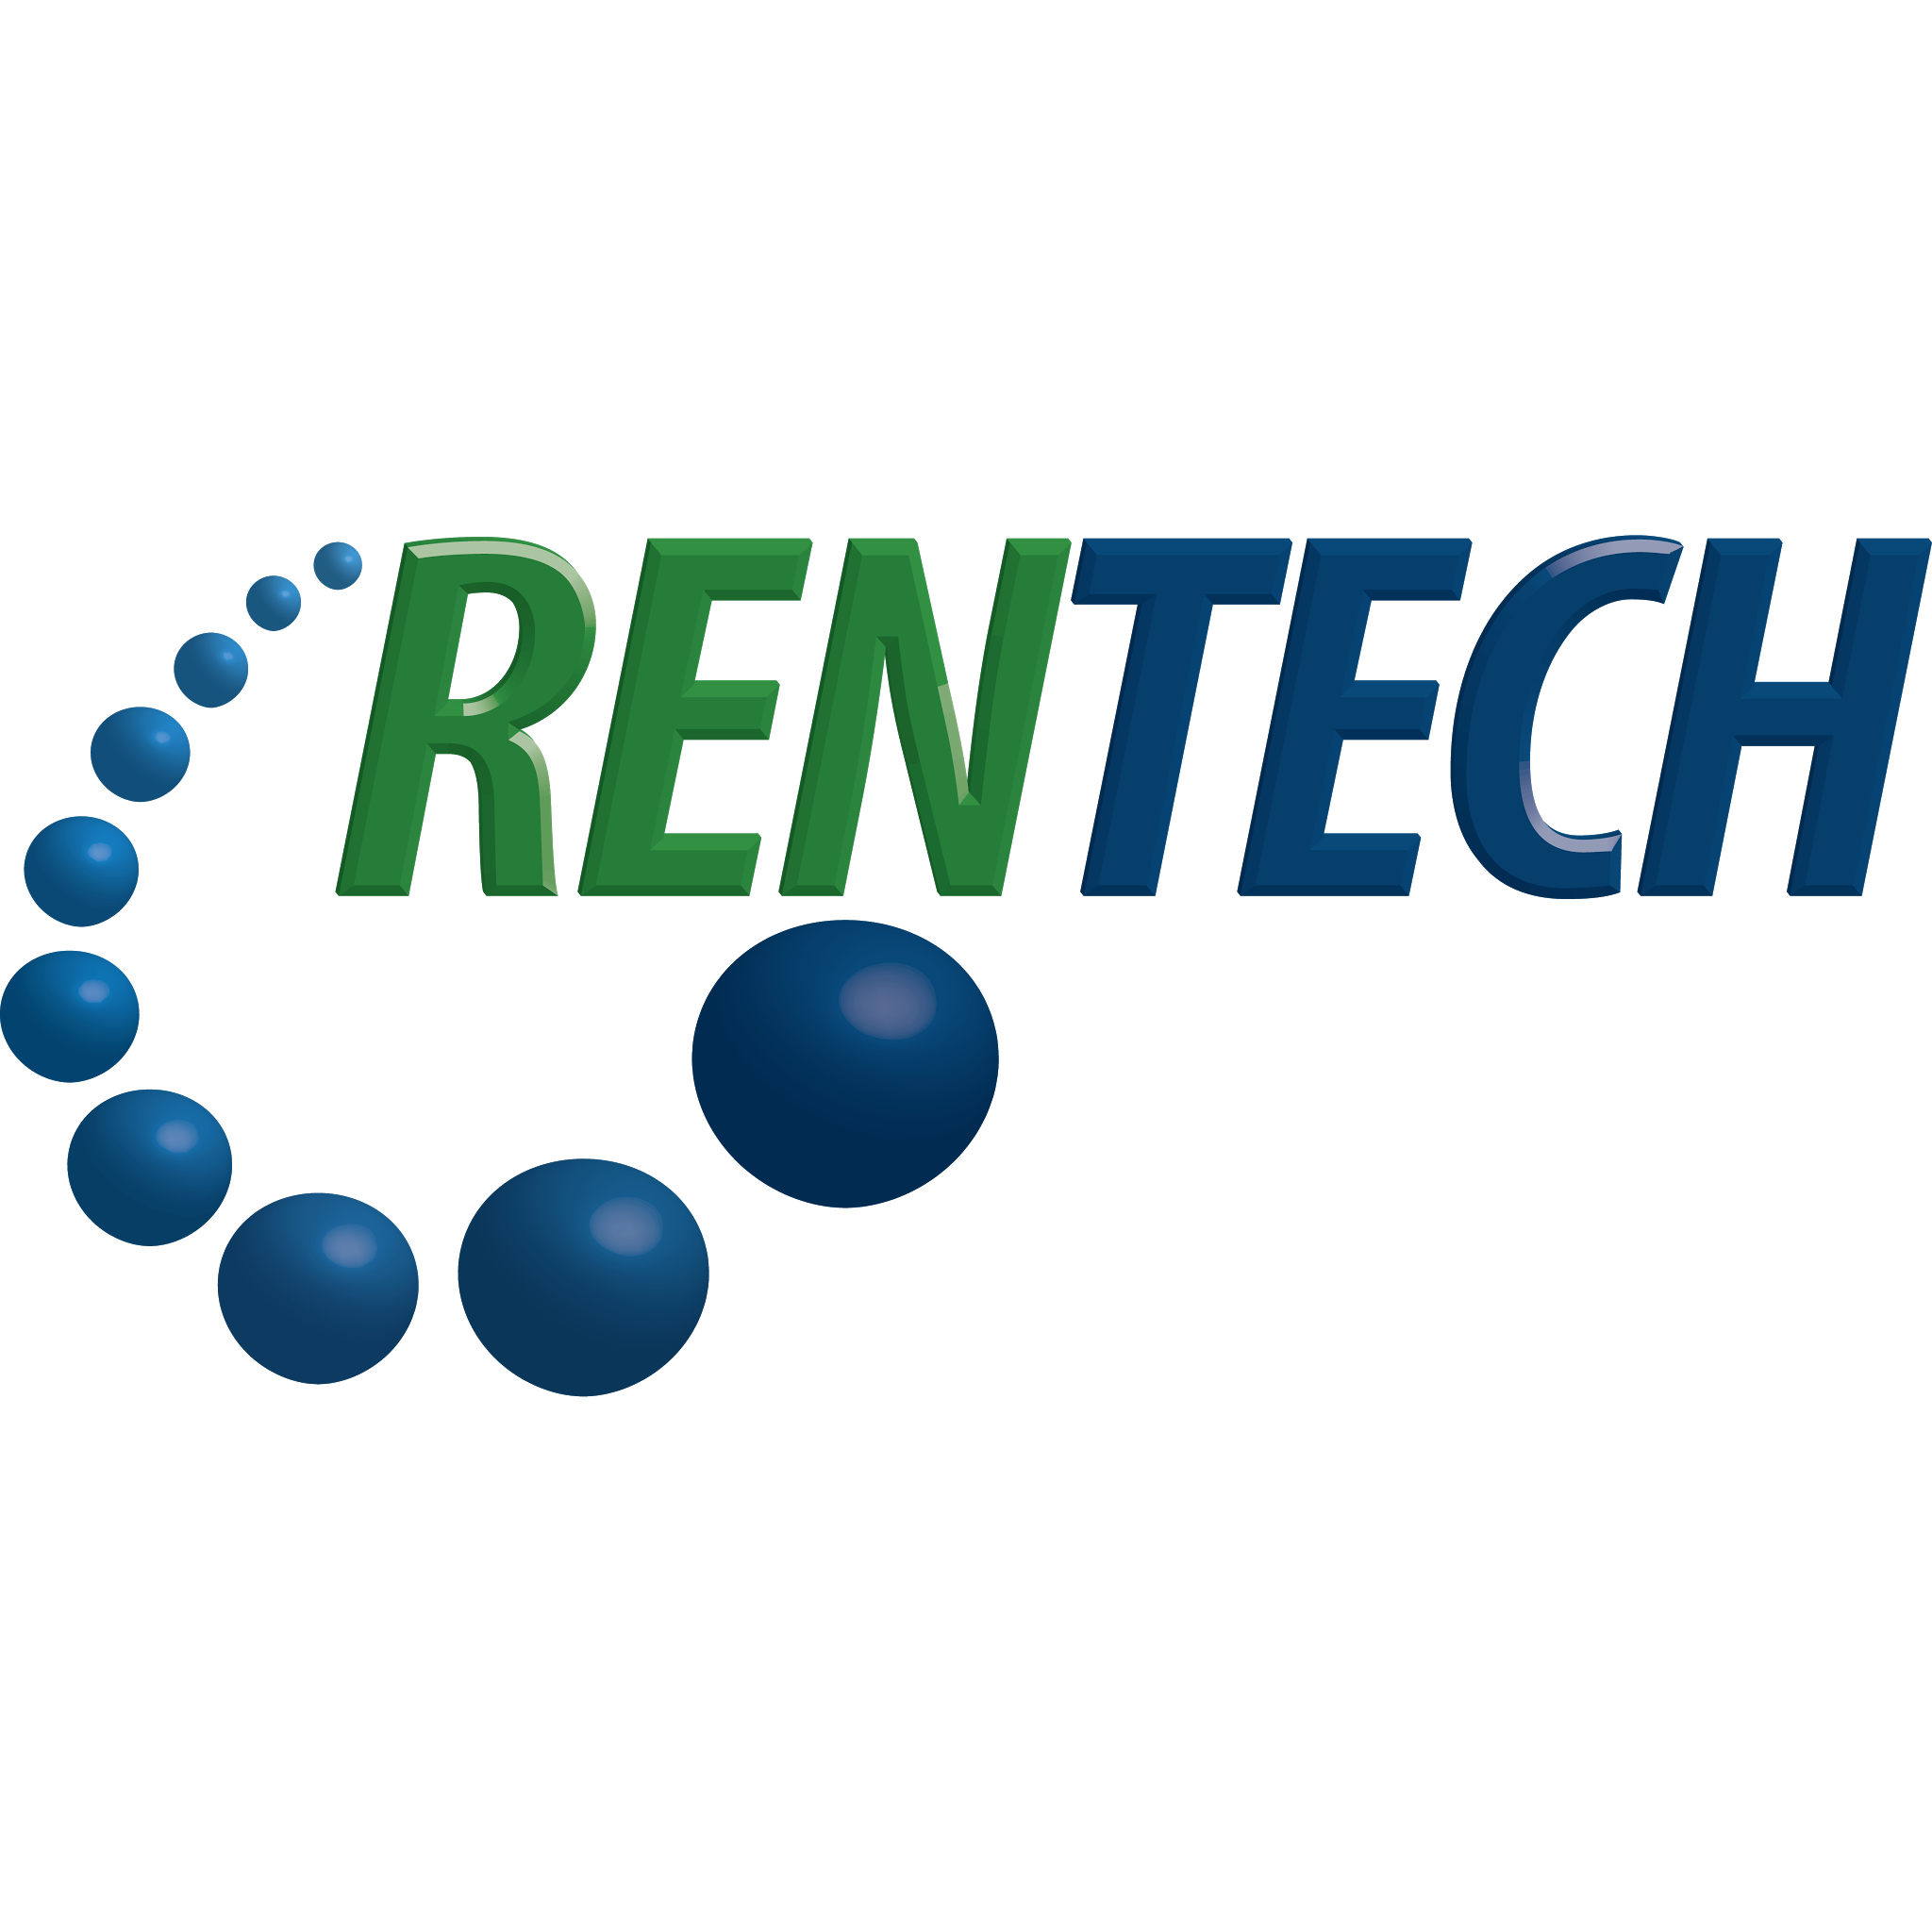 https://warrenenskat.com/wp-content/uploads/2019/01/Logo-Rentech.png